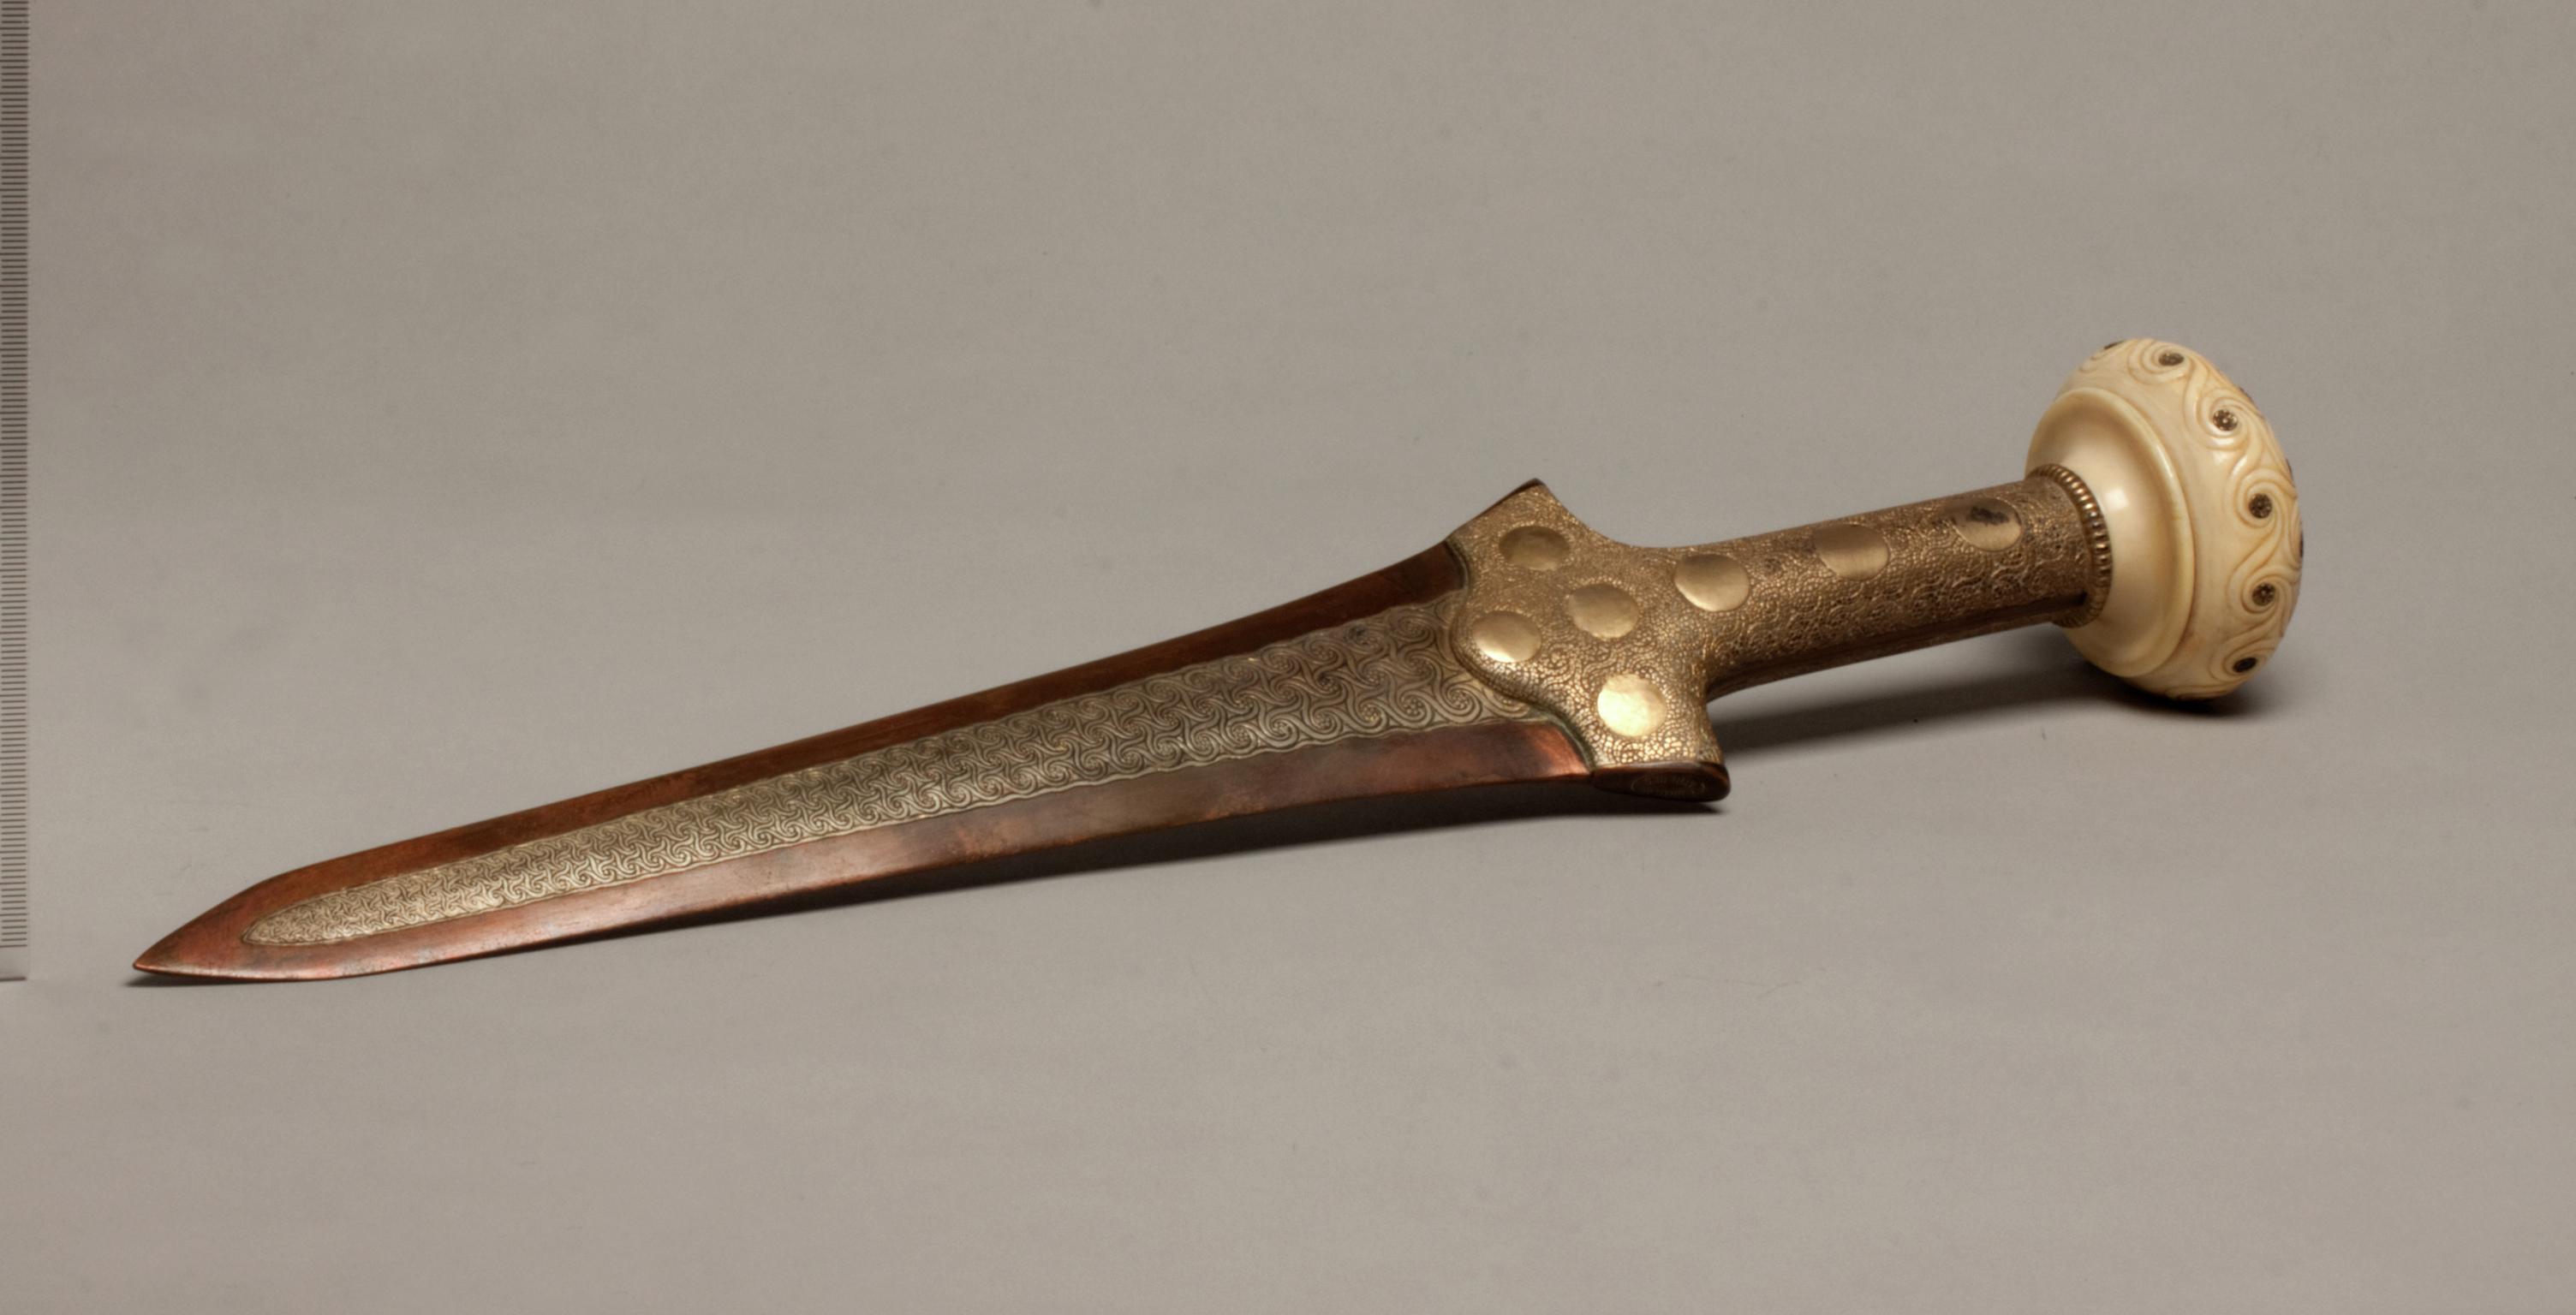 Mycenean copper alloy dagger (Replica)